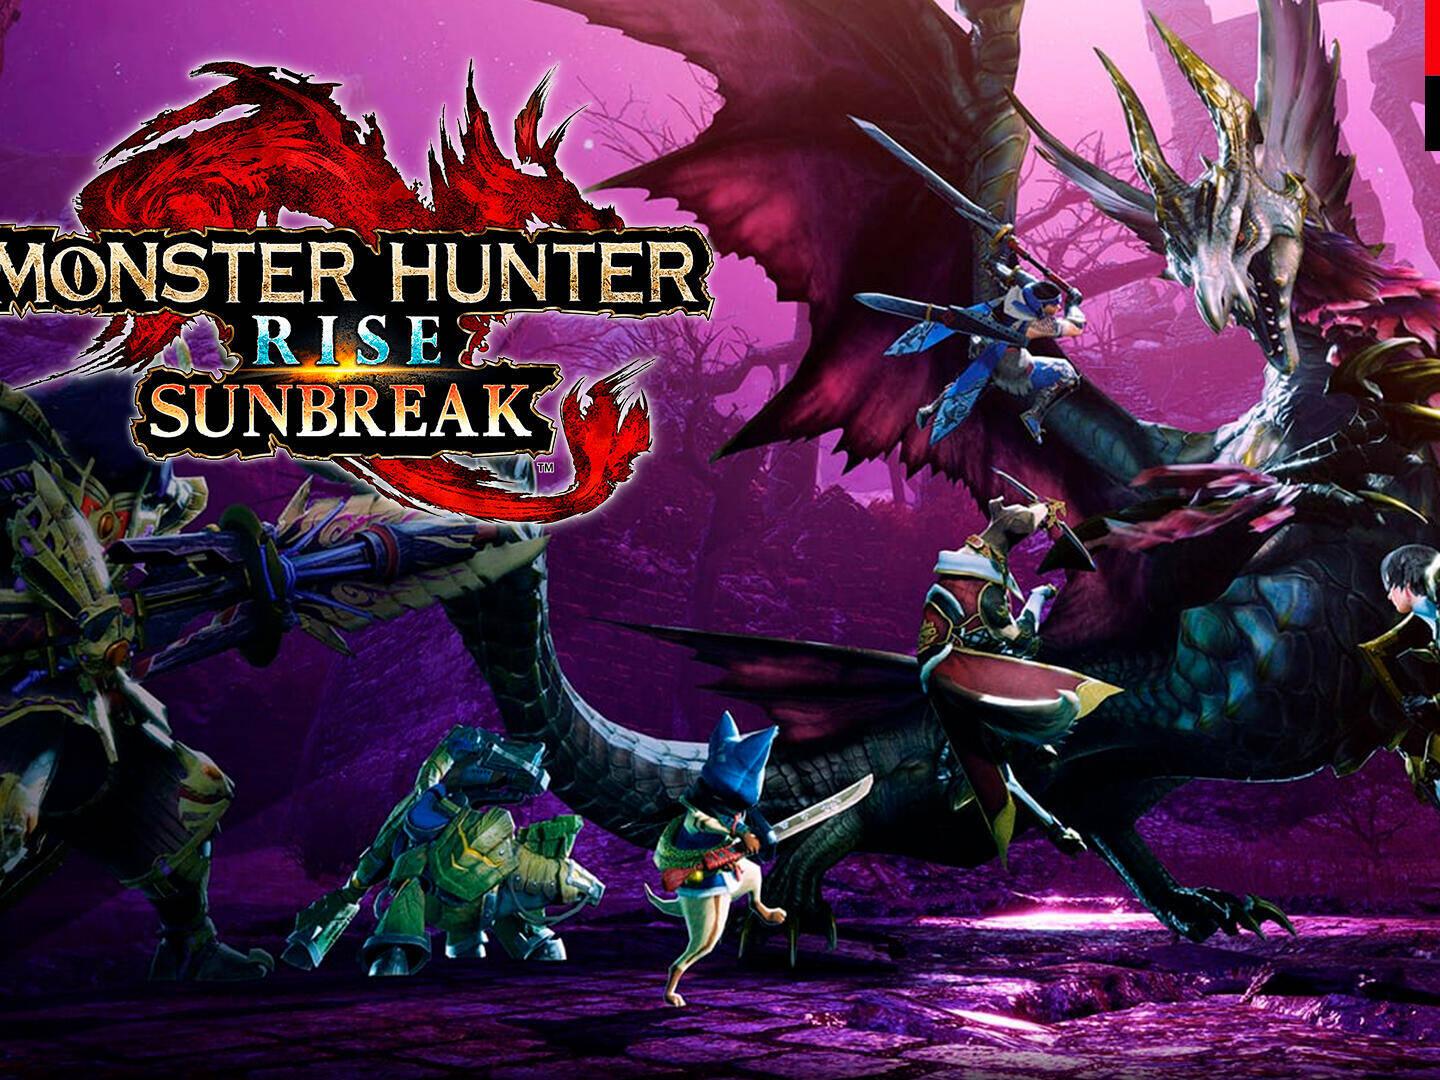 Cómo empezar Monster Hunter Rise Sunbreak: requisitos y qué misiones debes  completar antes de iniciar la expansión